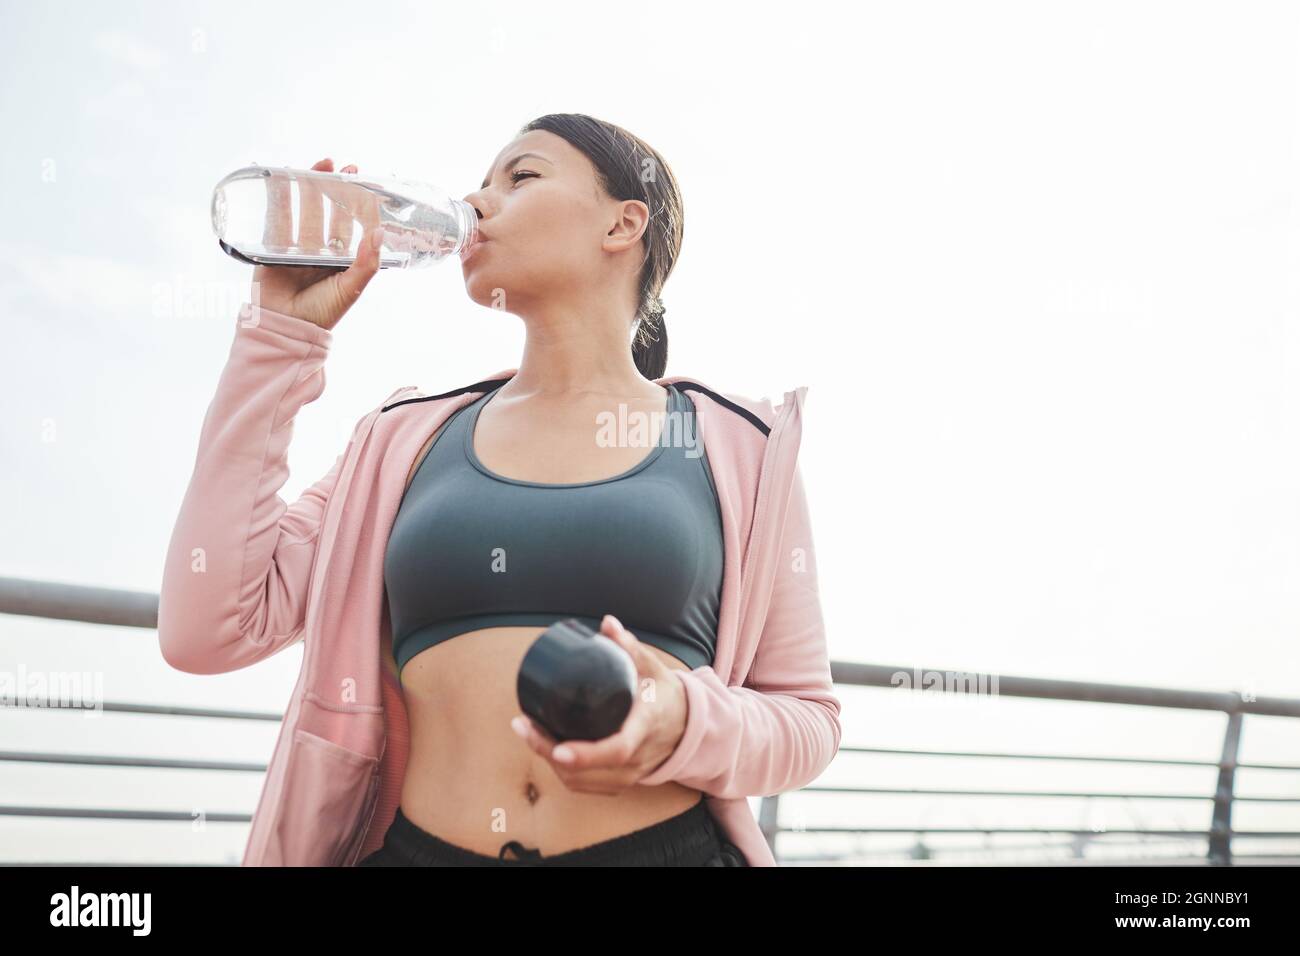 Mujer joven deportiva bebiendo agua de la botella después de entrenar en deportes al aire libre Foto de stock